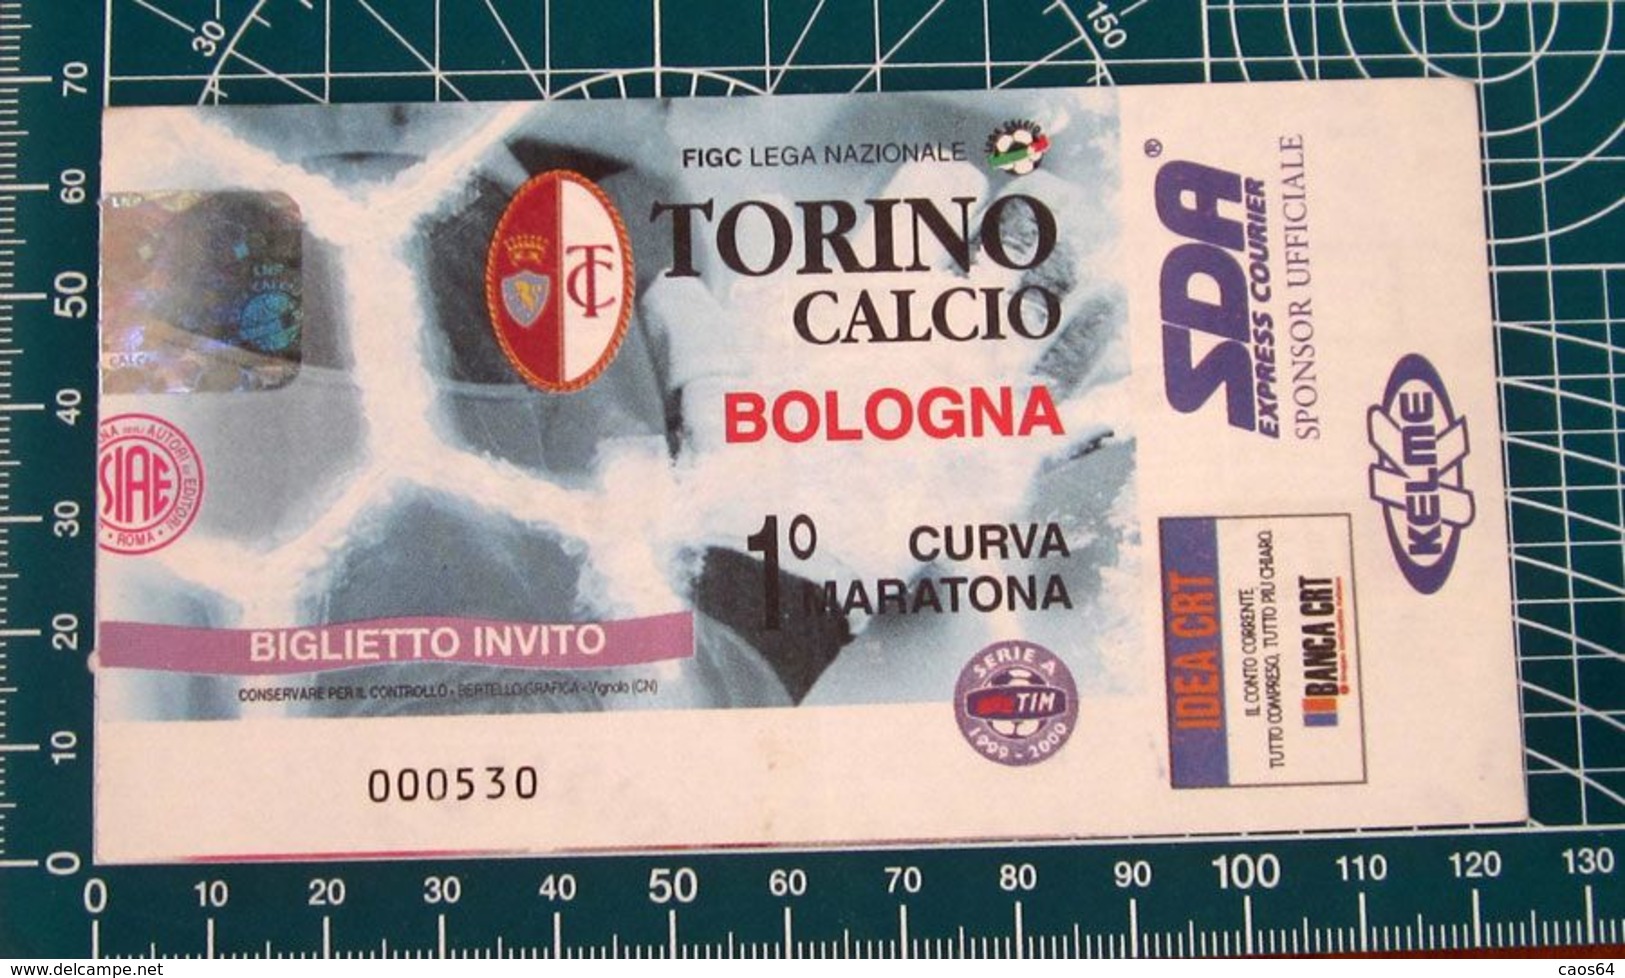 Biglietto Invito Ticket  TORINO Vs BOLOGNA Curva Maratona - Eintrittskarten